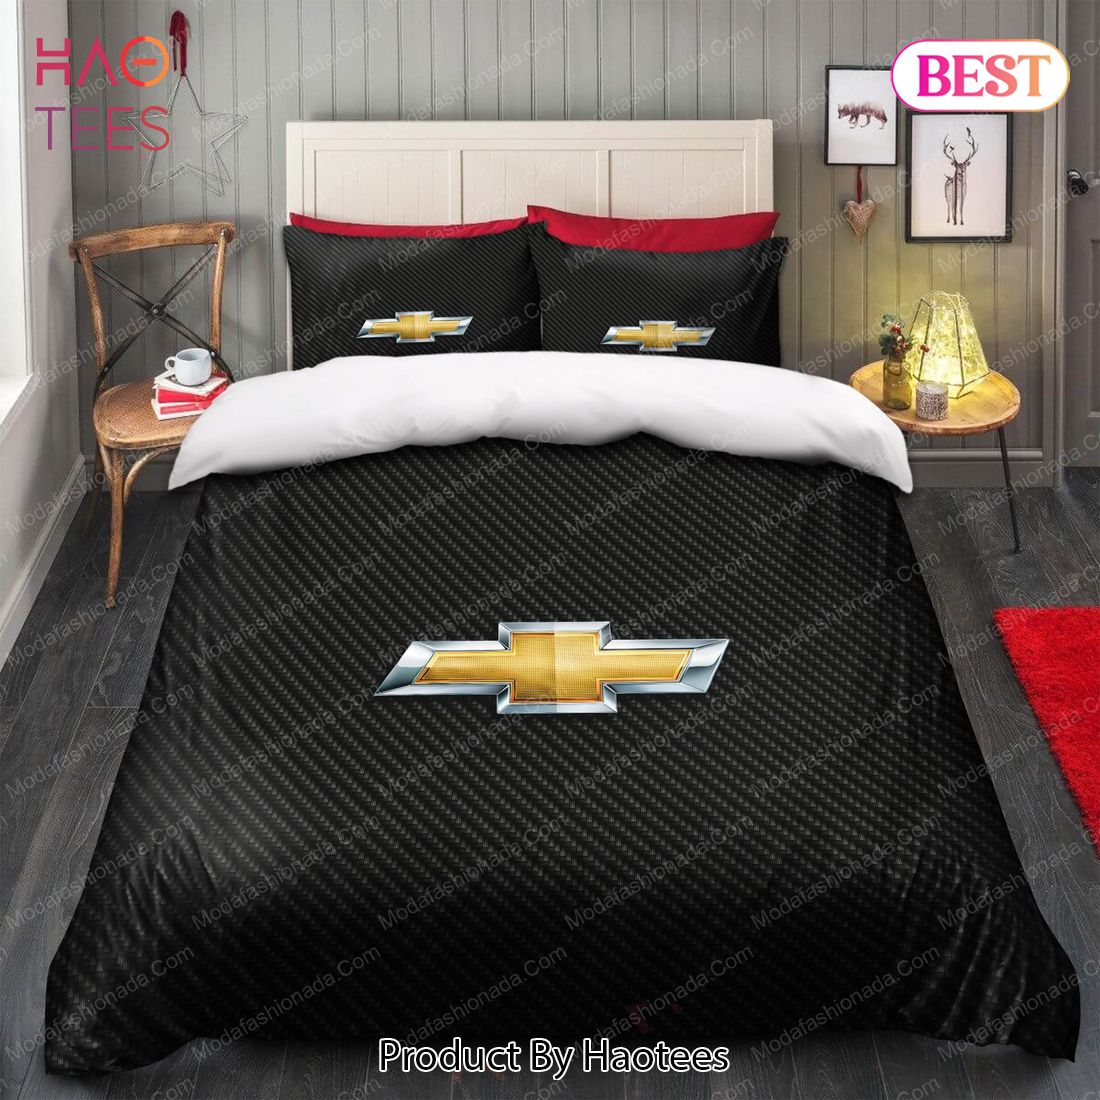 Buy Chevrolet Chevy Bedding Sets Bed Sets, Bedroom Sets, Comforter Sets, Duvet Cover, Bedspread